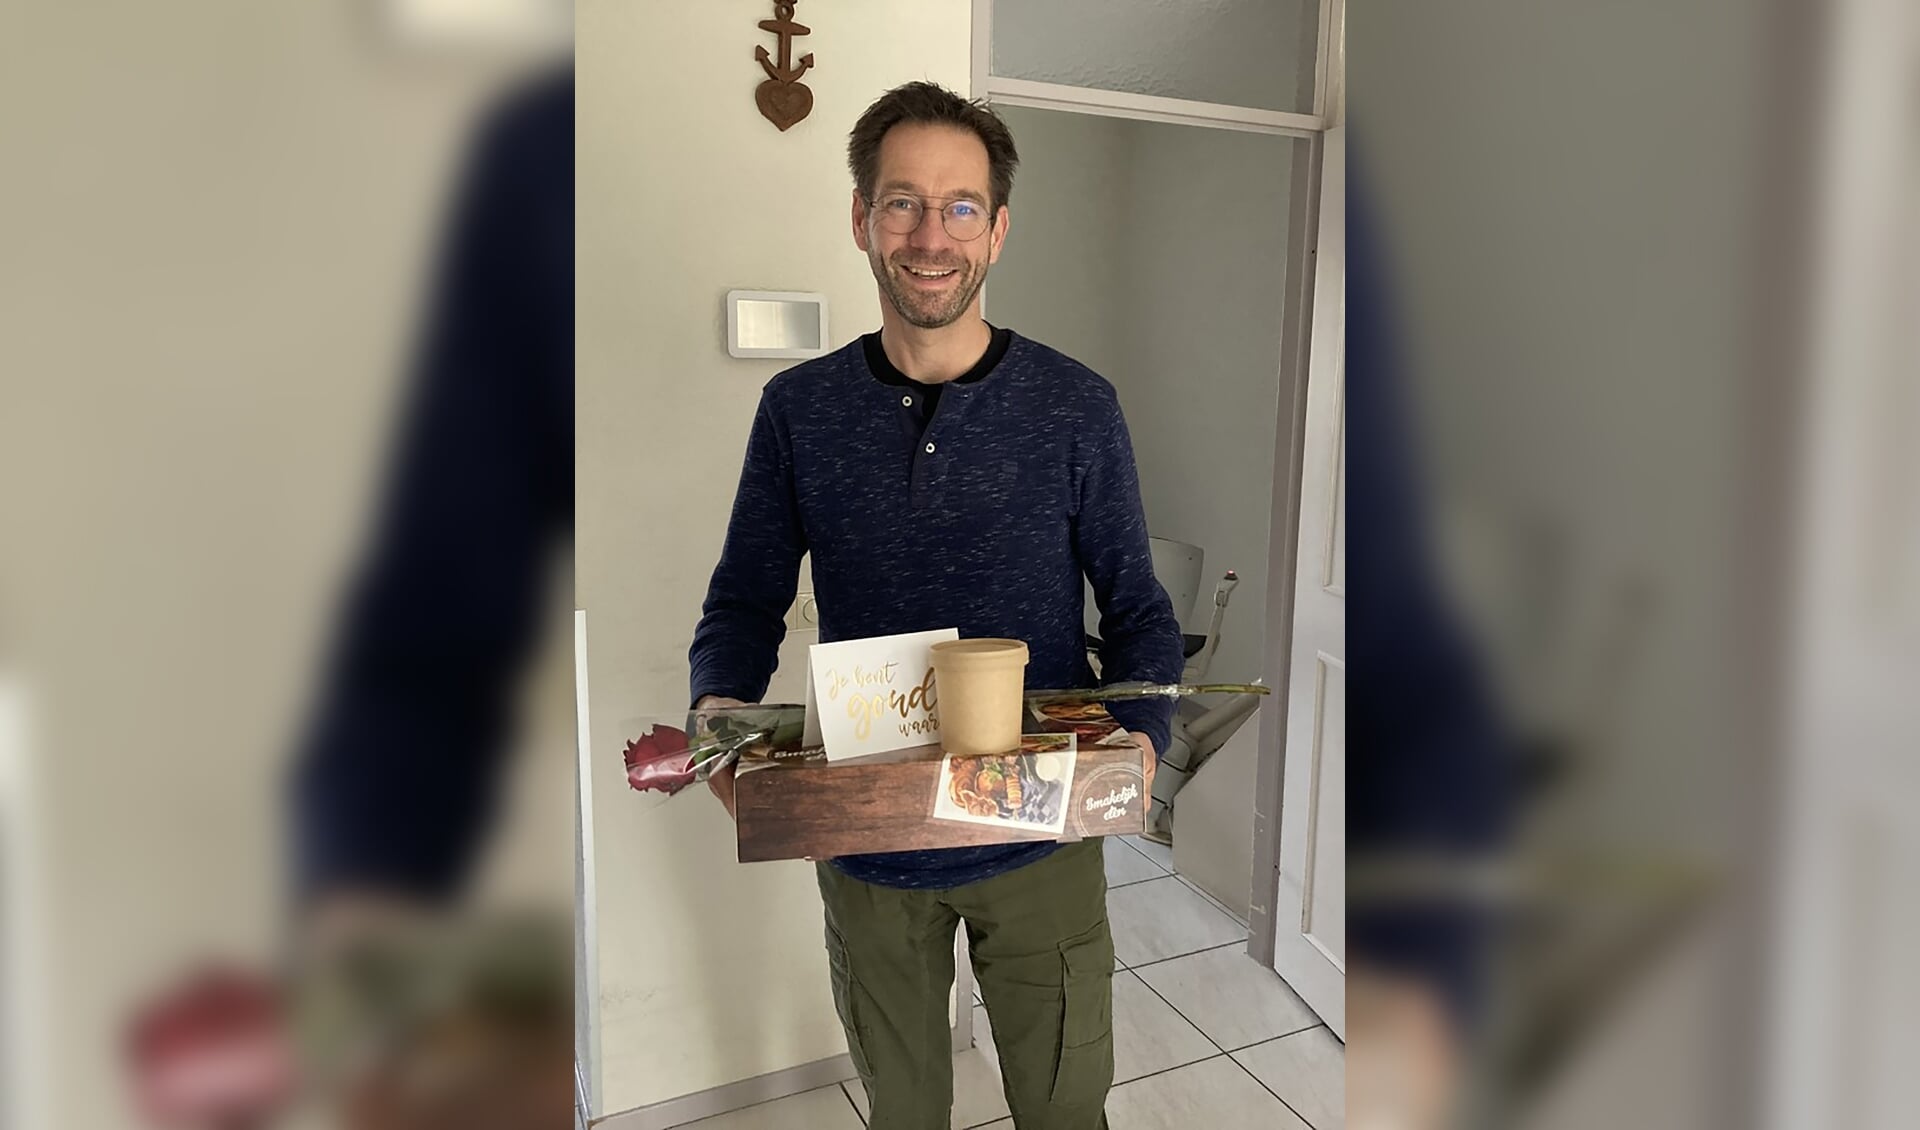 Mantelzorger Govert-Jan plaatste een bedankbericht op social media na het afhalen van een lunchbox.